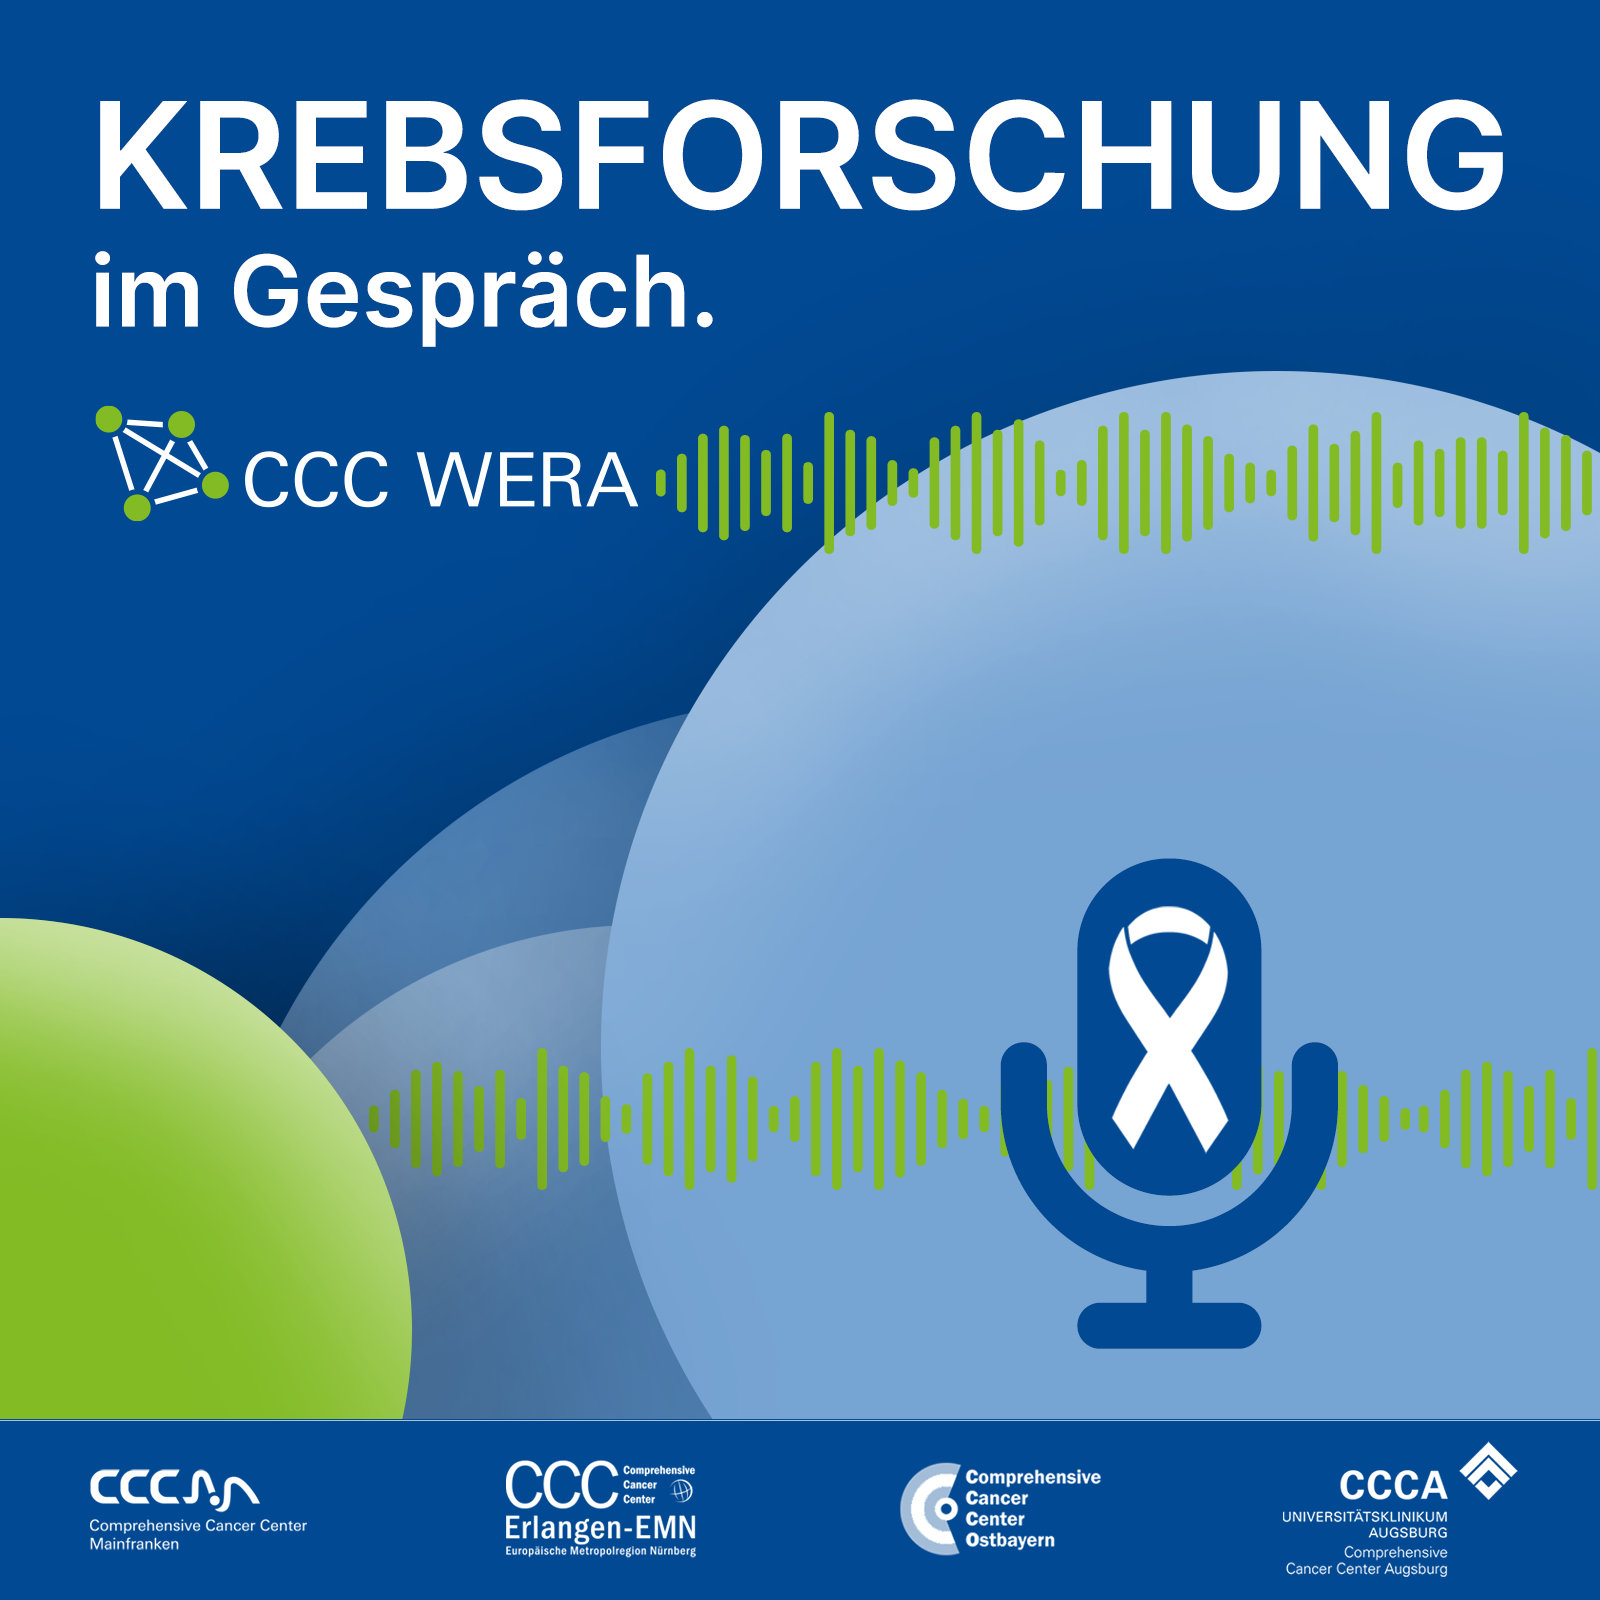 Podcast "Krebsforschung im Gespräch"